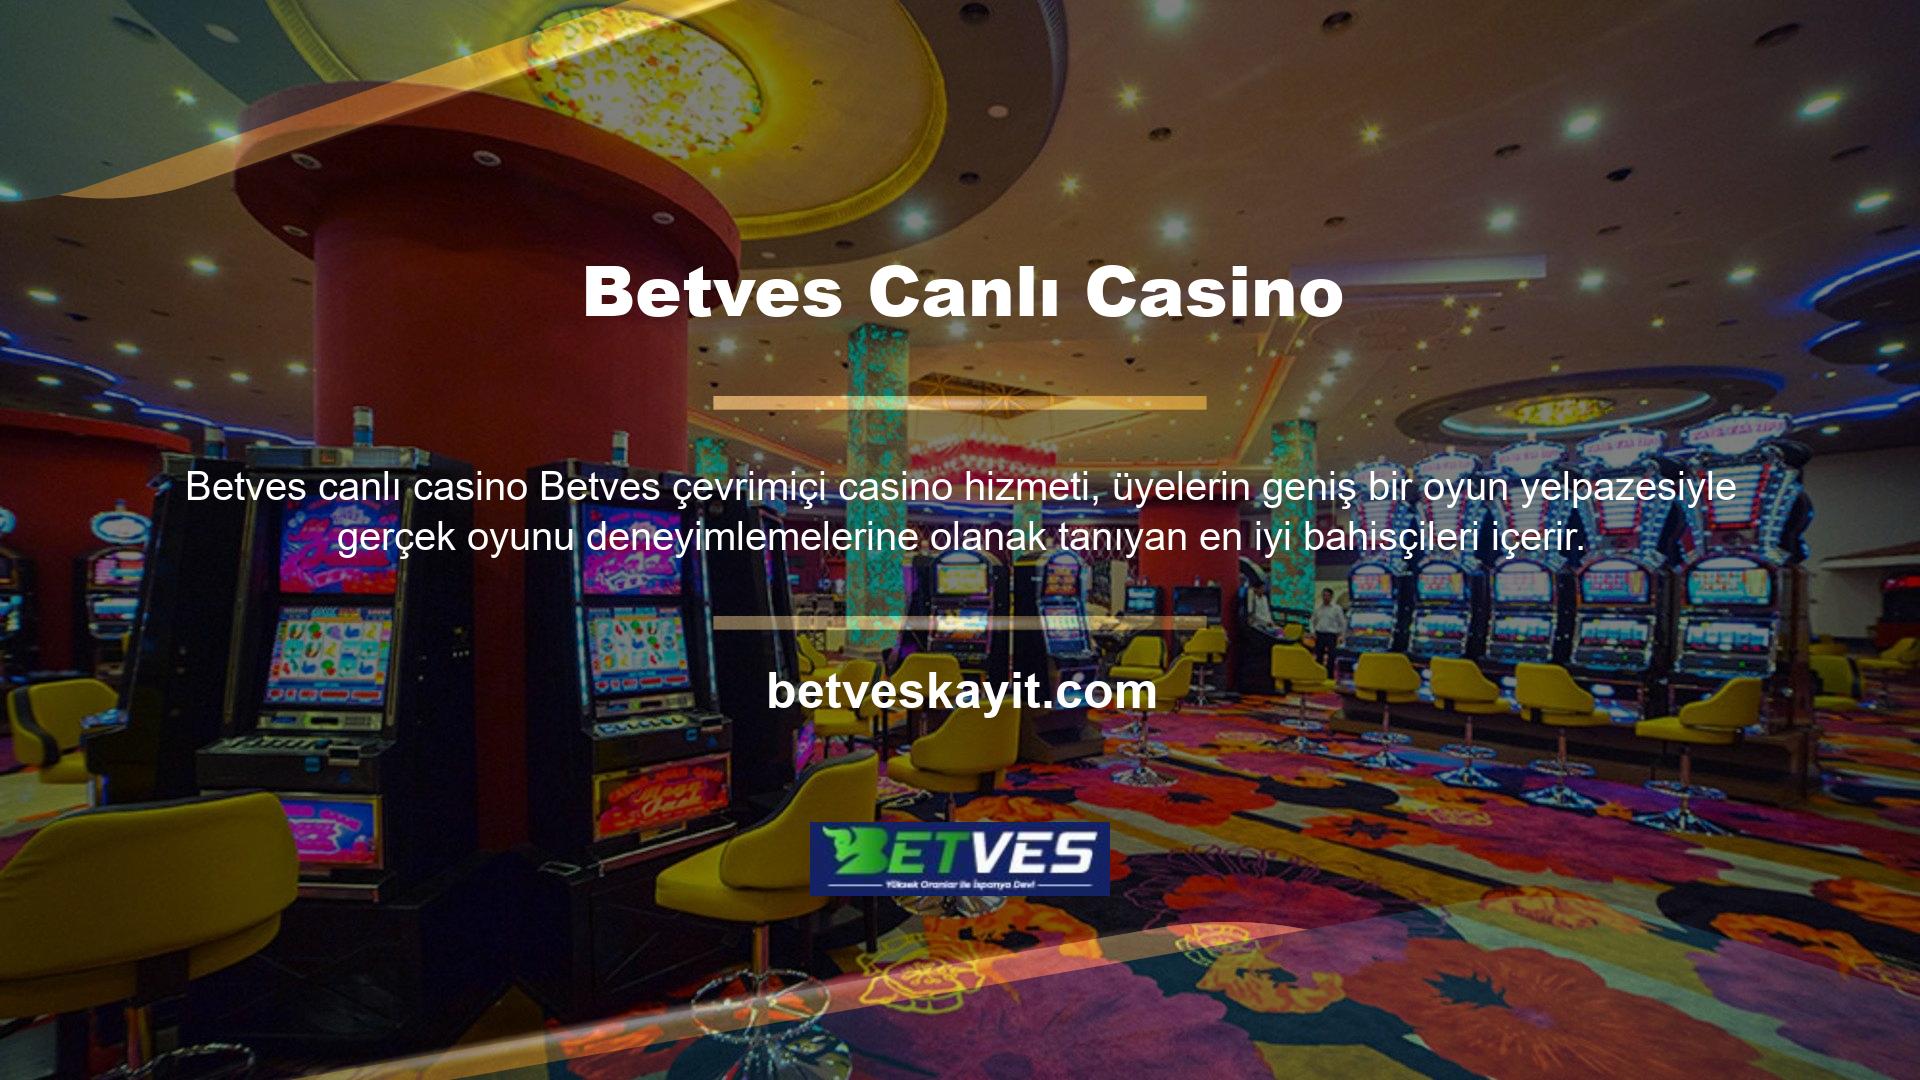 Betves casino hizmetinin daha önce sitemizde yer verdiği canlı bahis mağazalarını öne çıkaran birçok önemli alt başlık bulunmaktadır